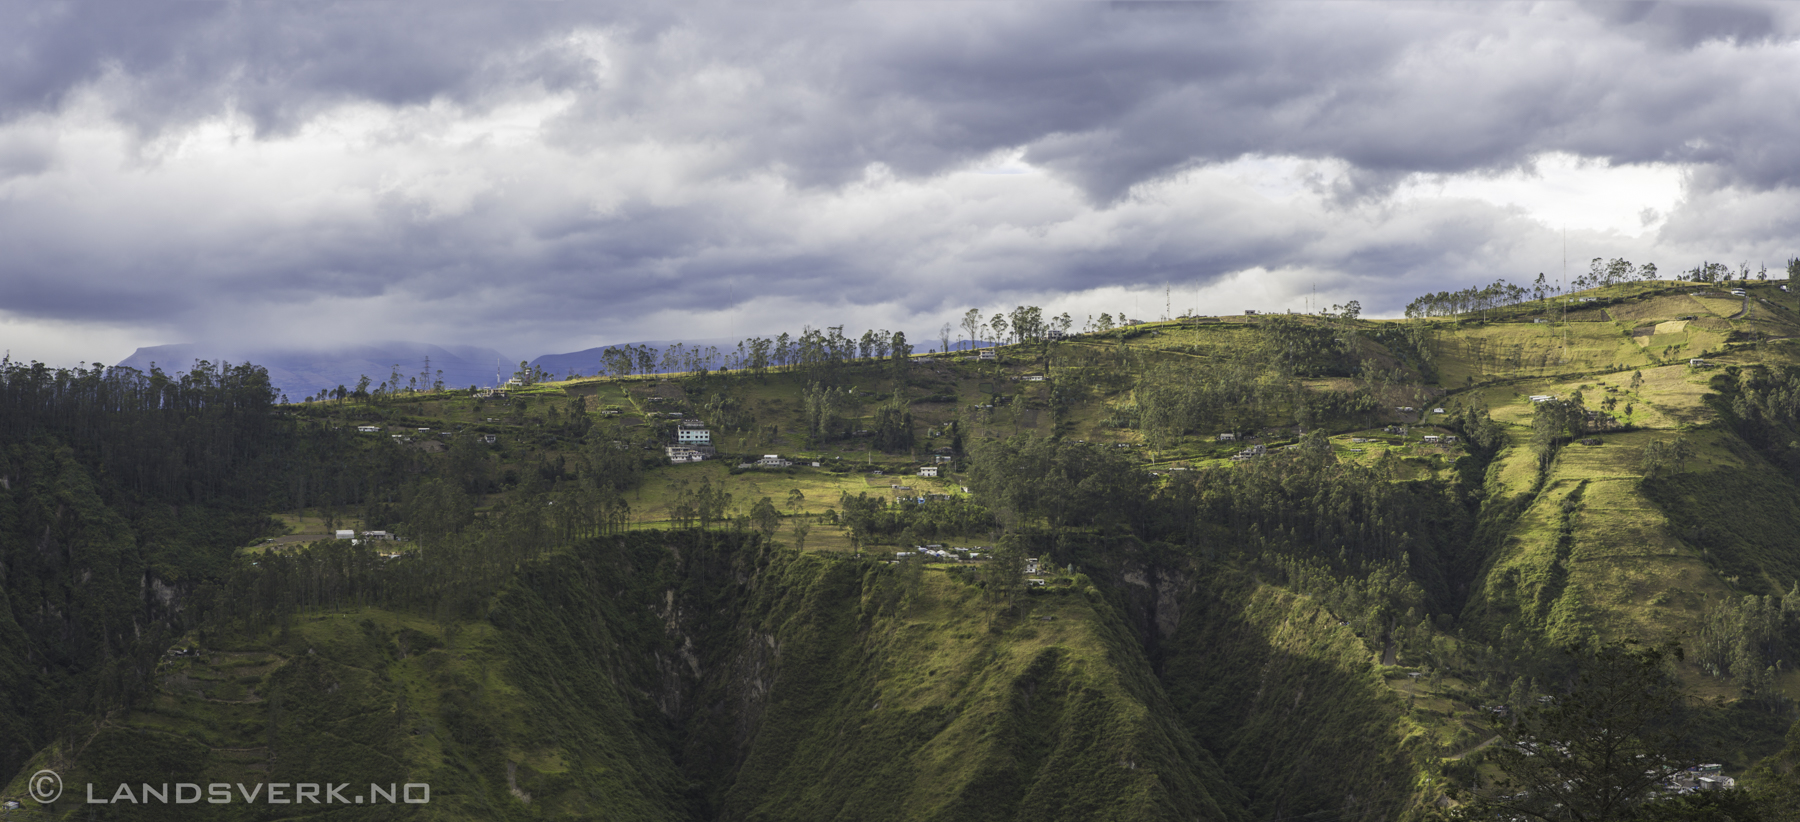 Quito countryside, Ecuador. 

(Canon EOS 5D Mark III / Canon EF 24-70mm f/2.8 L USM)